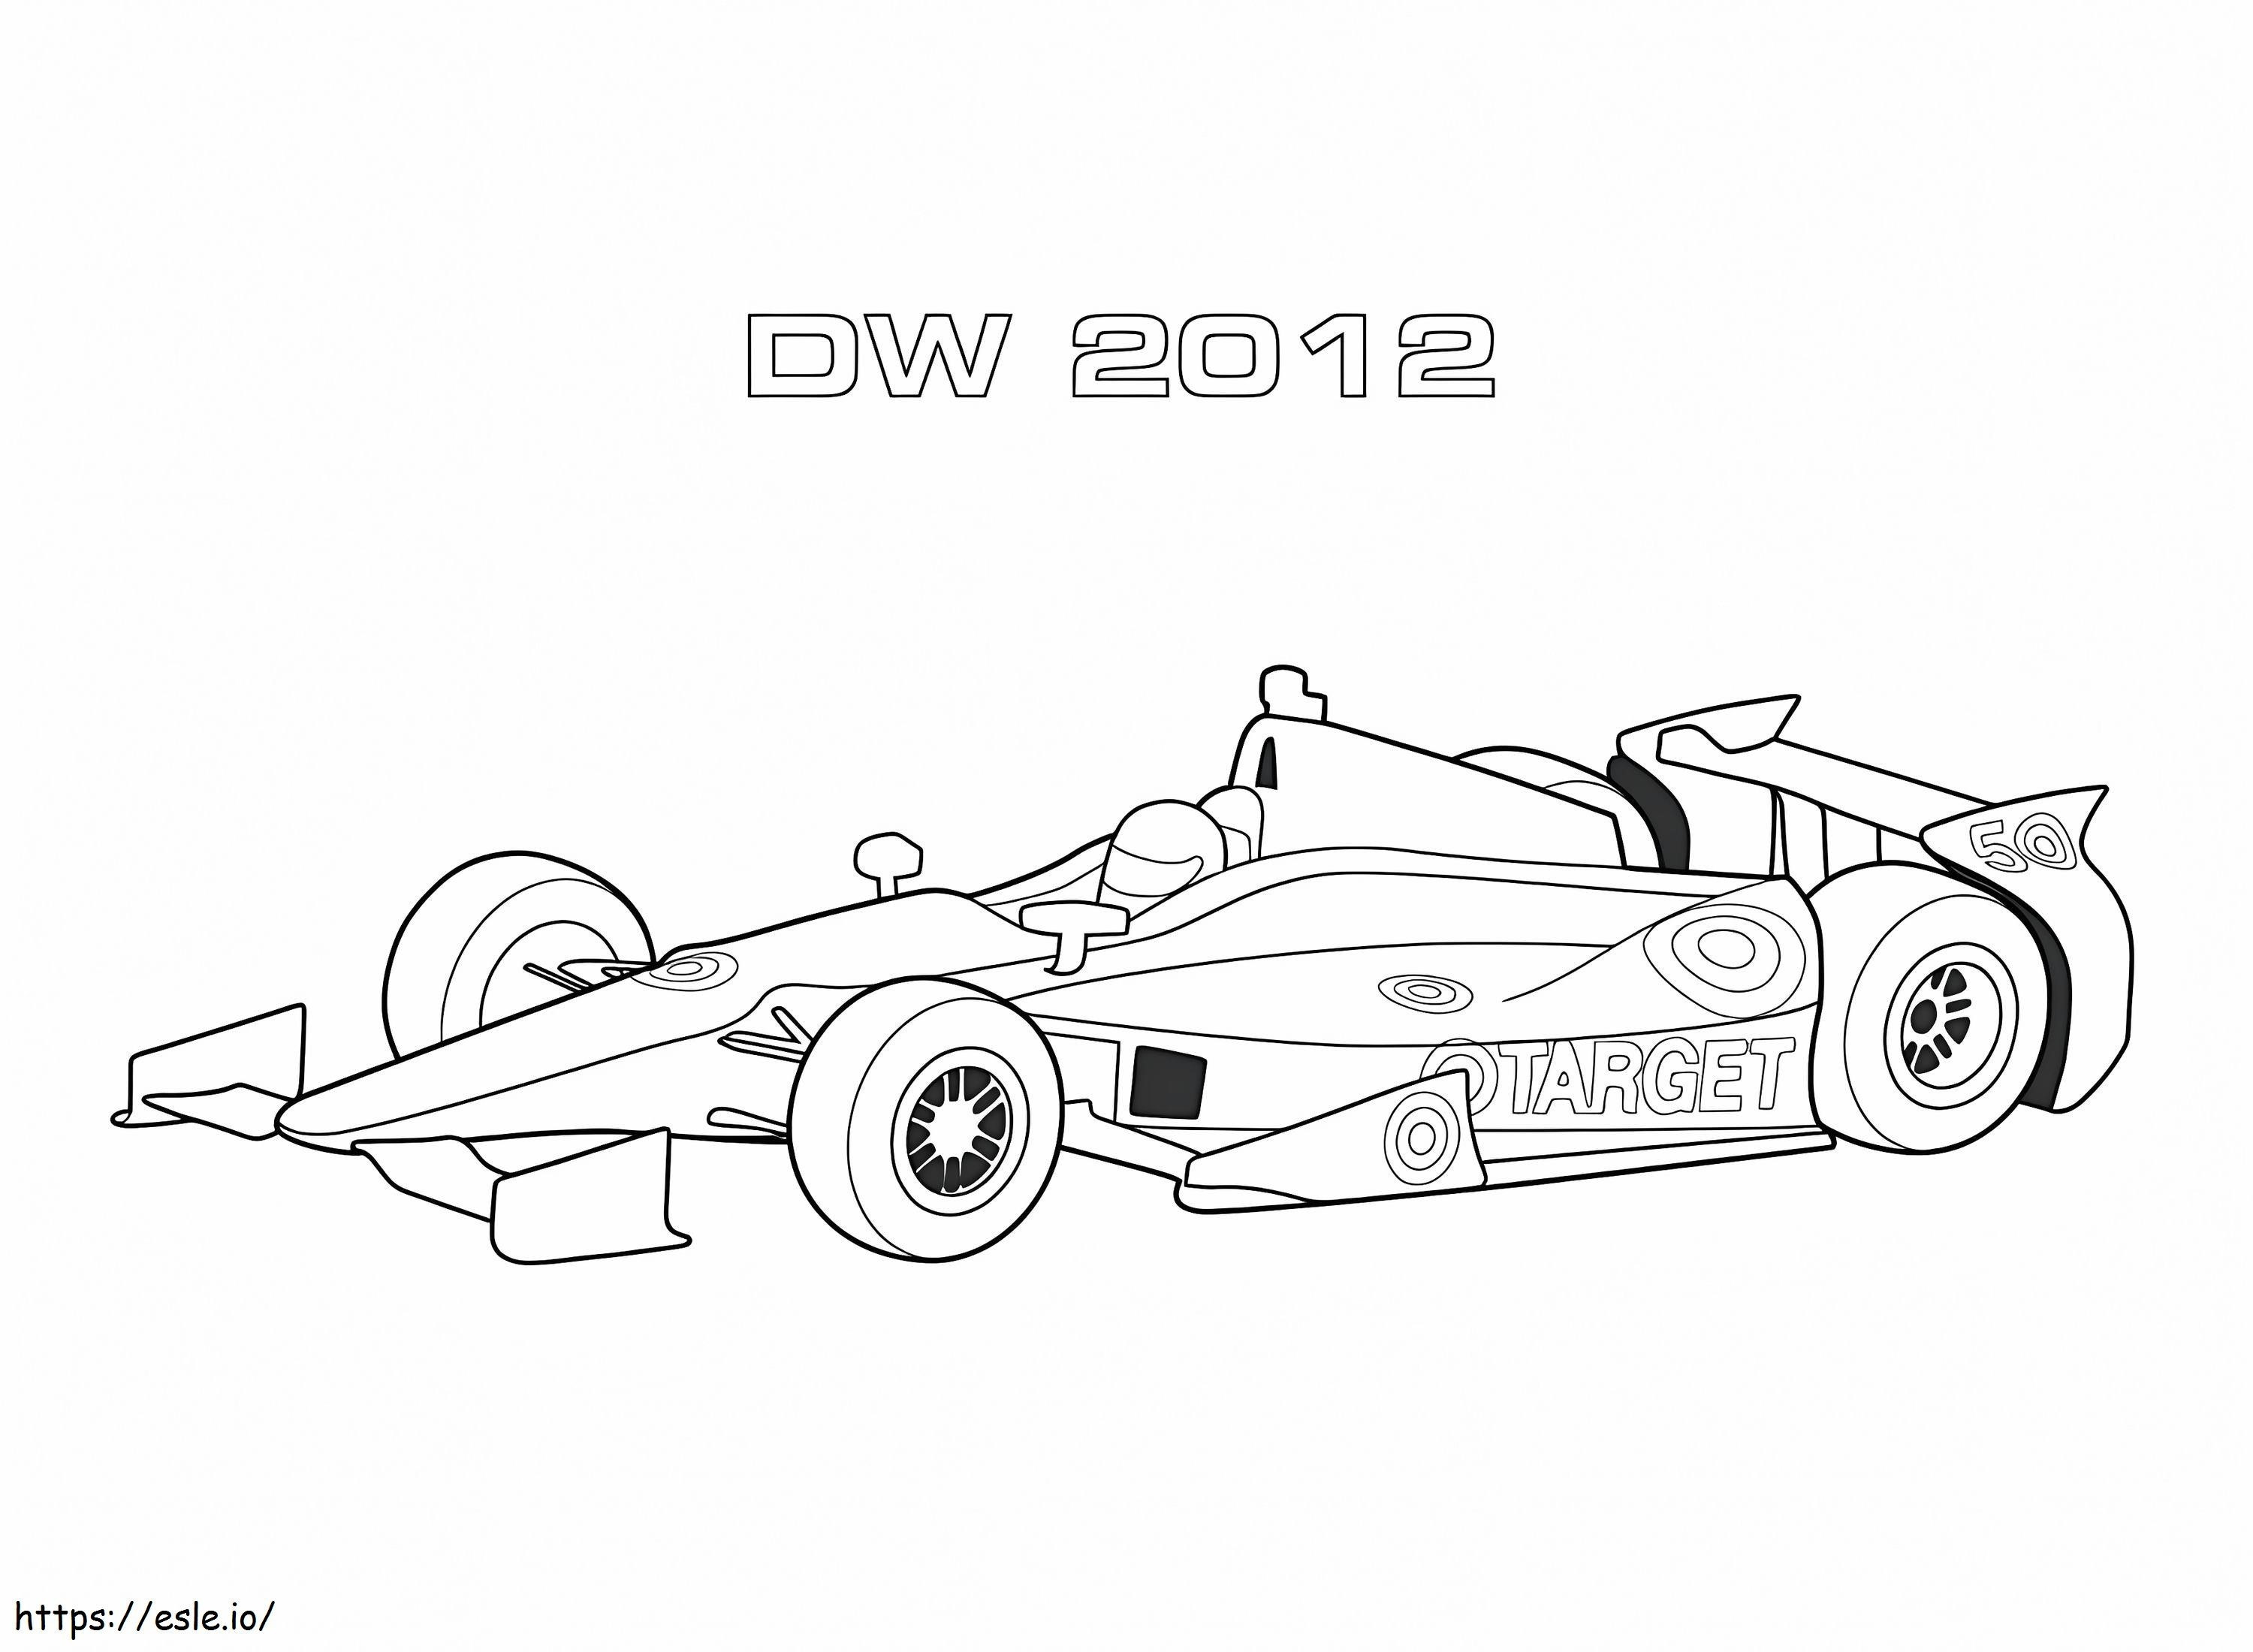 Dw 2012 Race Car coloring page